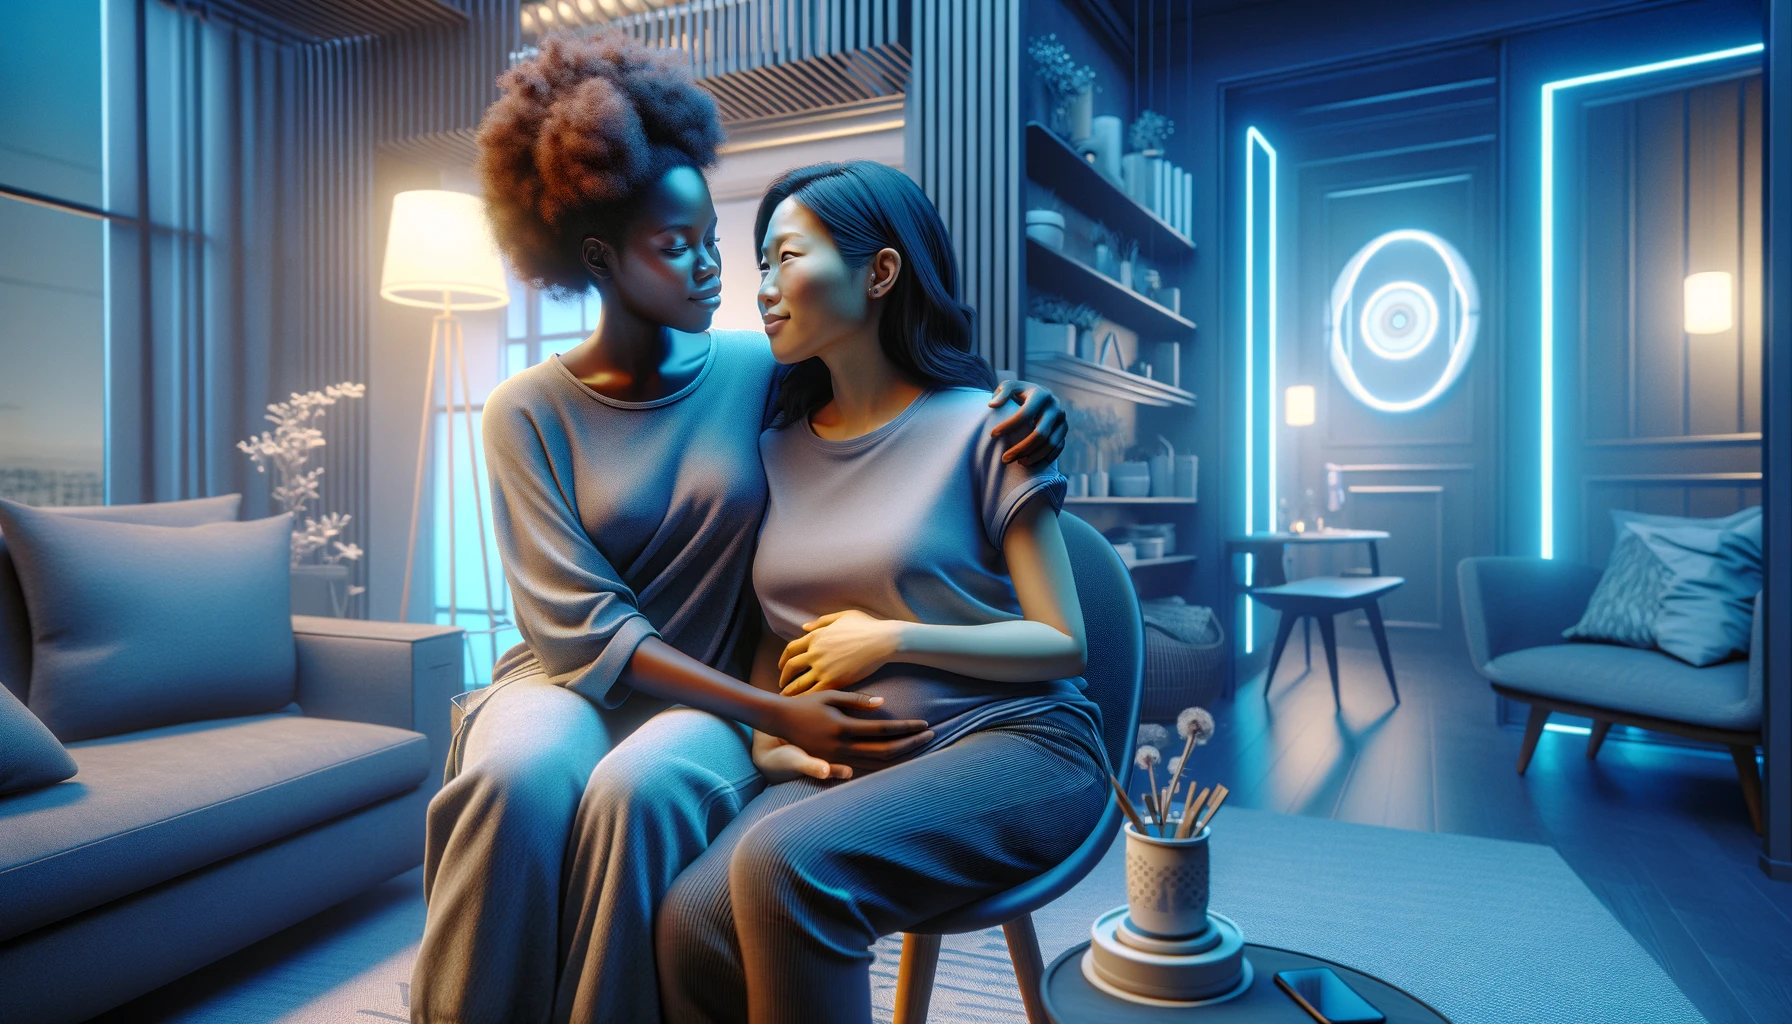 Uma mulher negra e uma mulher asiática, simbolizando a licença maternidade em uma relação homoafetiva, vestindo roupas do dia a dia e compartilhando um momento íntimo em uma sala de estar aconchegante com detalhes futuristas em tons de azul.